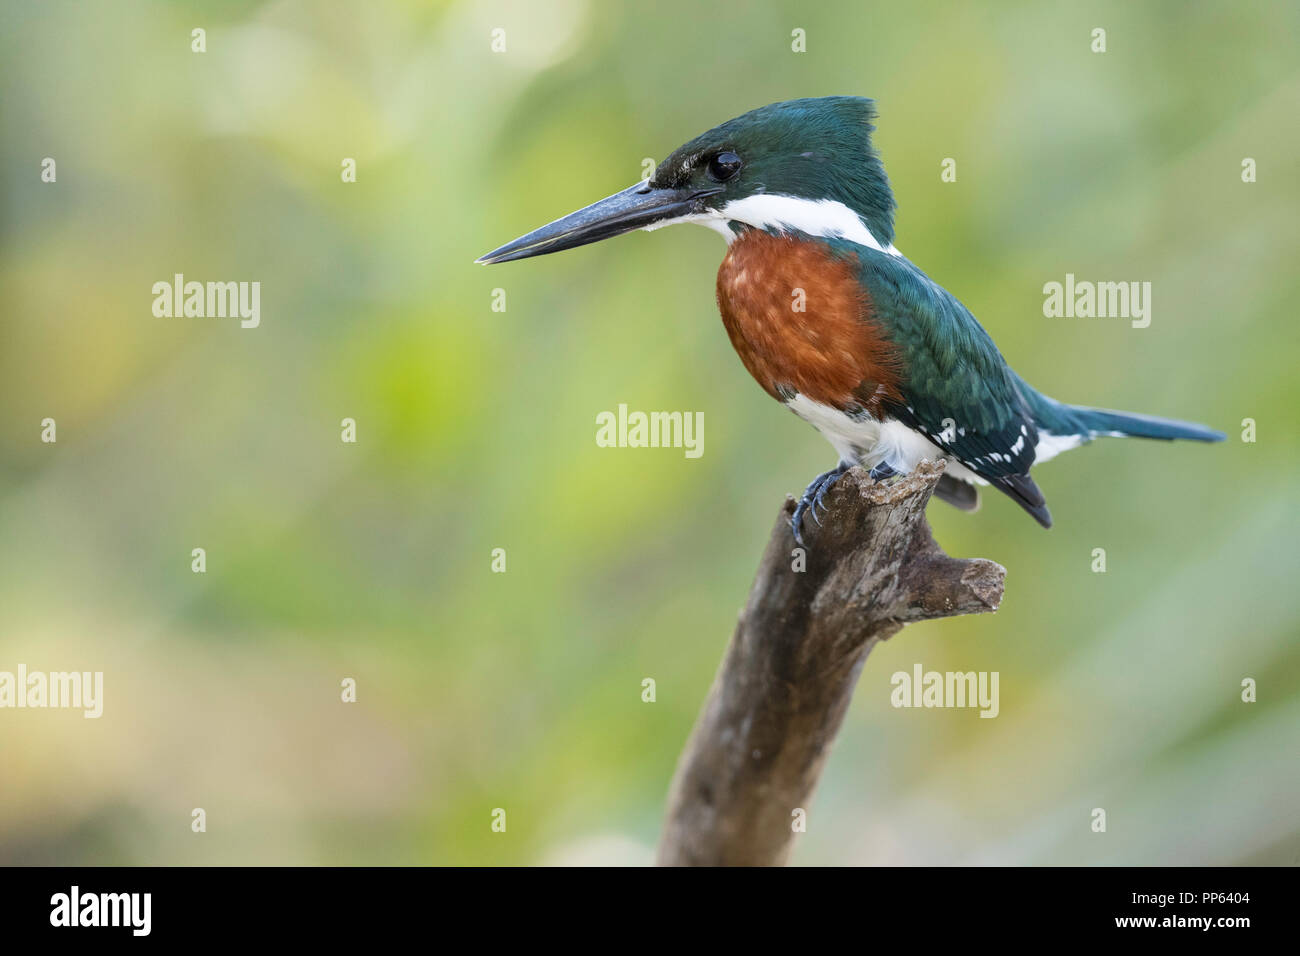 Männliche green Kingfisher (Chloroceryle americana), Soft Focus Hintergrund und kopieren Sie Raum, Porto Jofre, Mato Grosso, Pantanal, Brasilien. Stockfoto